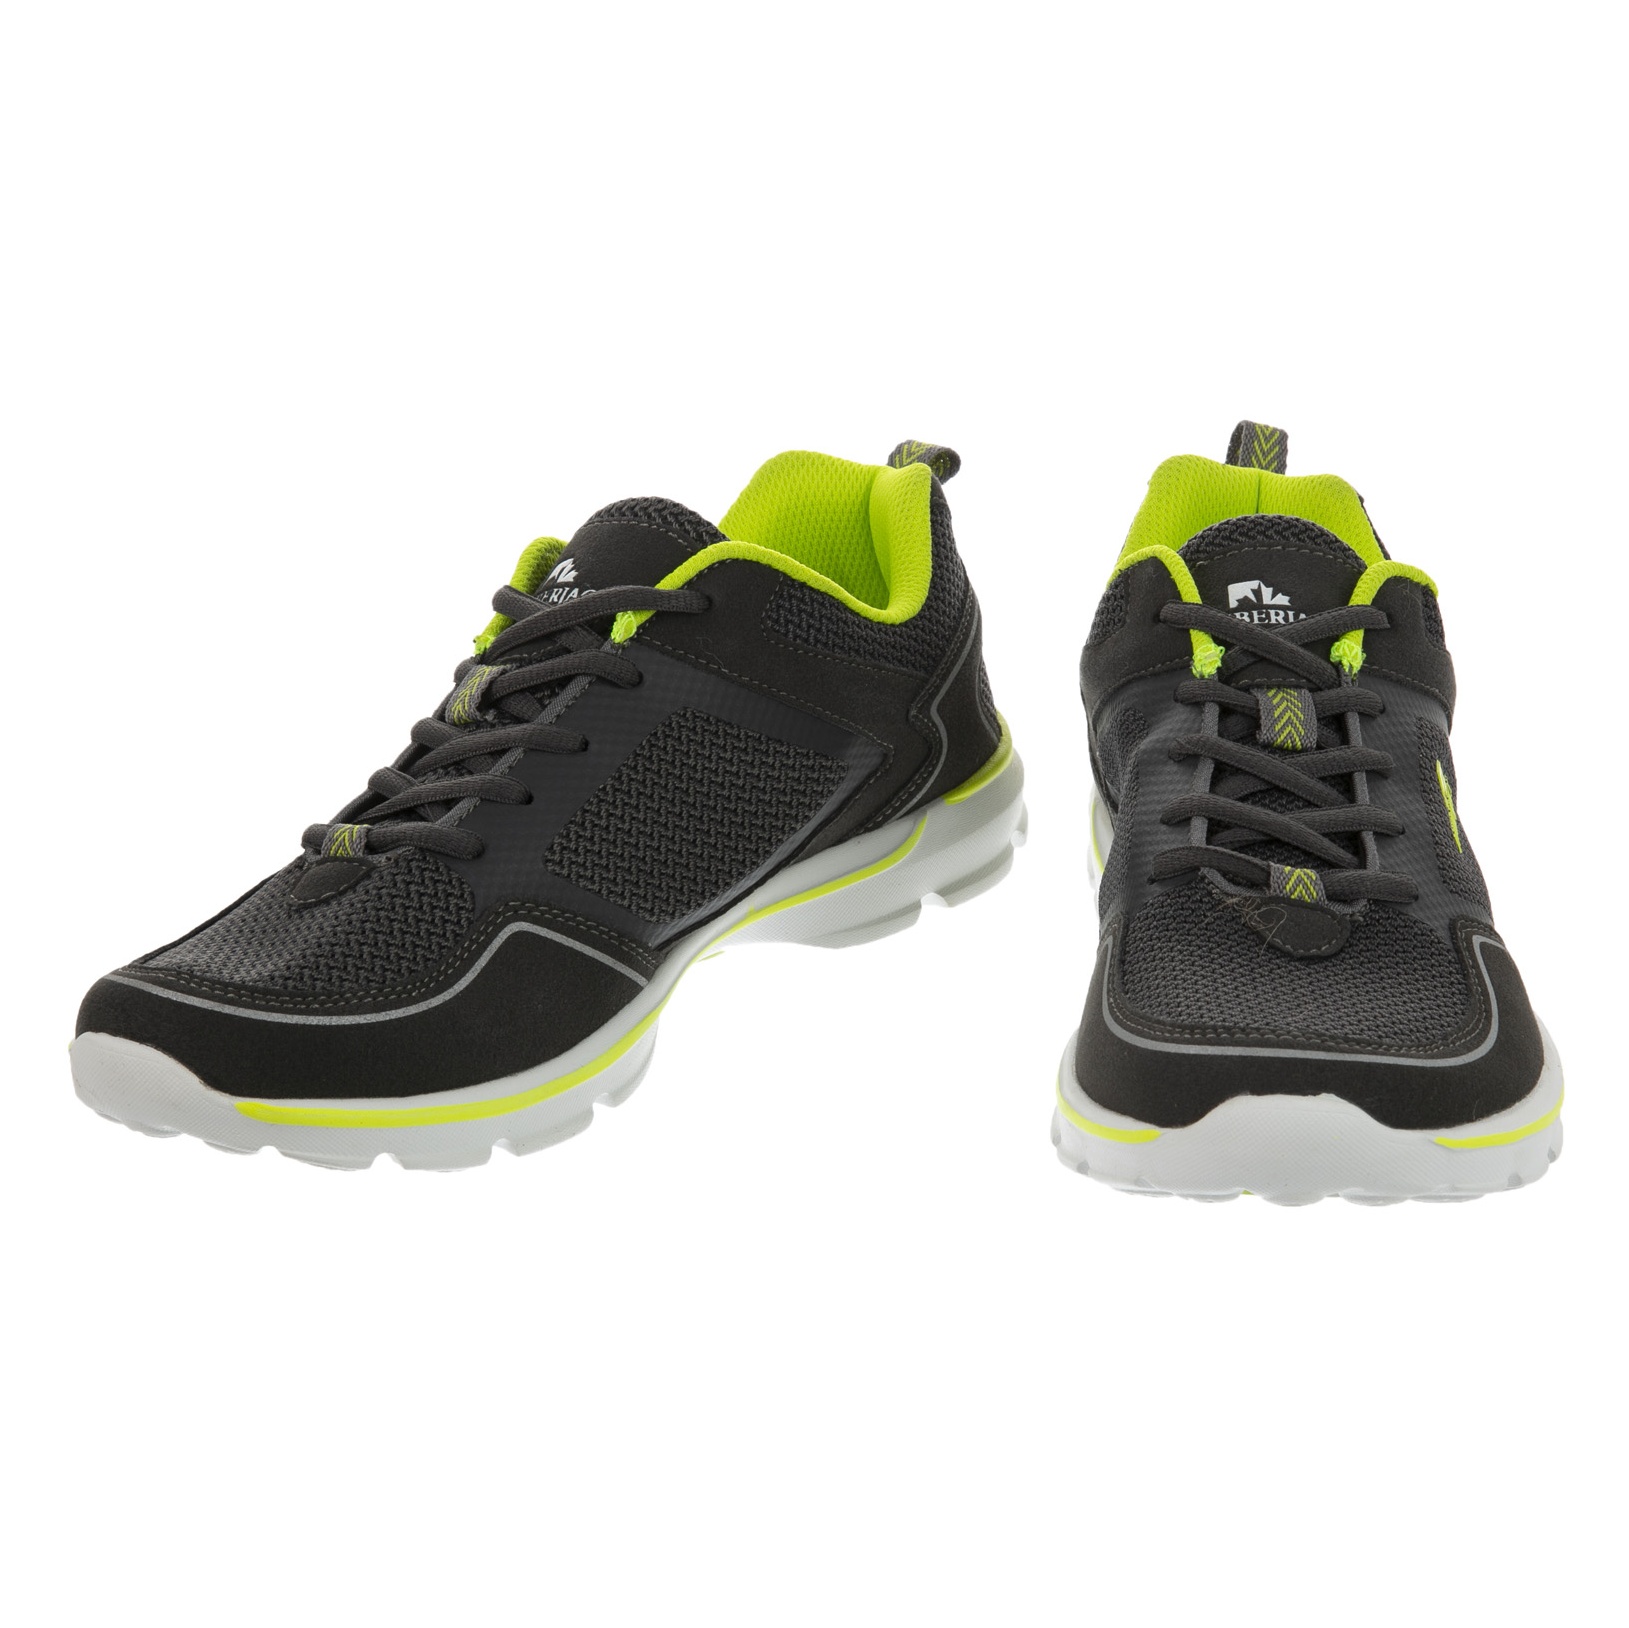 کفش ورزشی مردانه لامبرجک مدل 100236459-GR